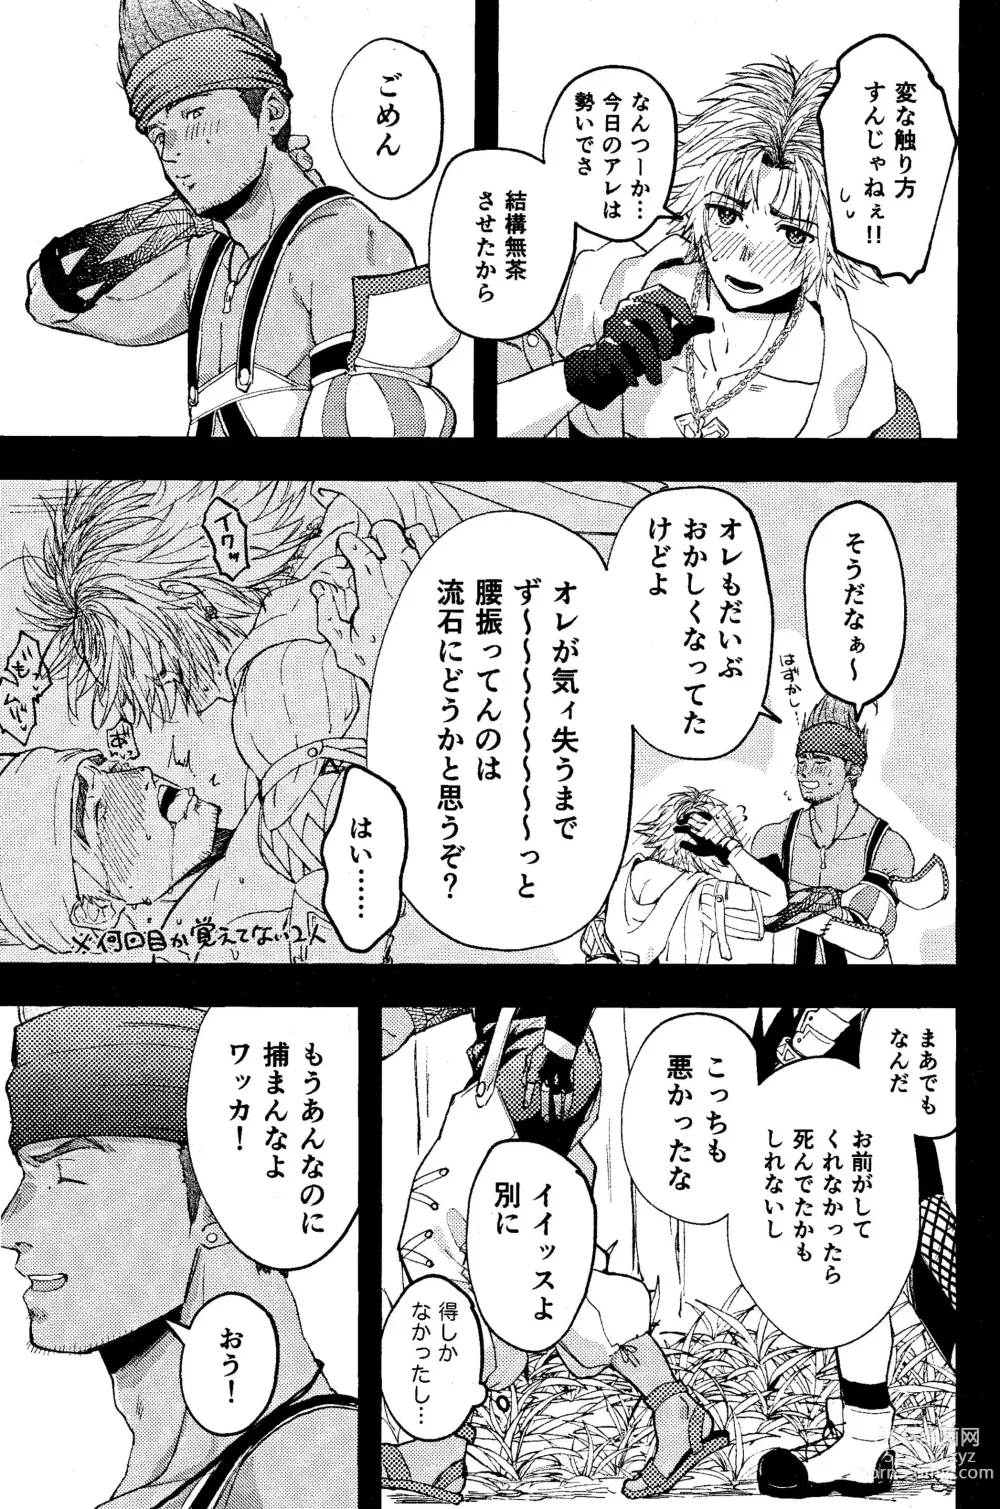 Page 41 of doujinshi Wakkan